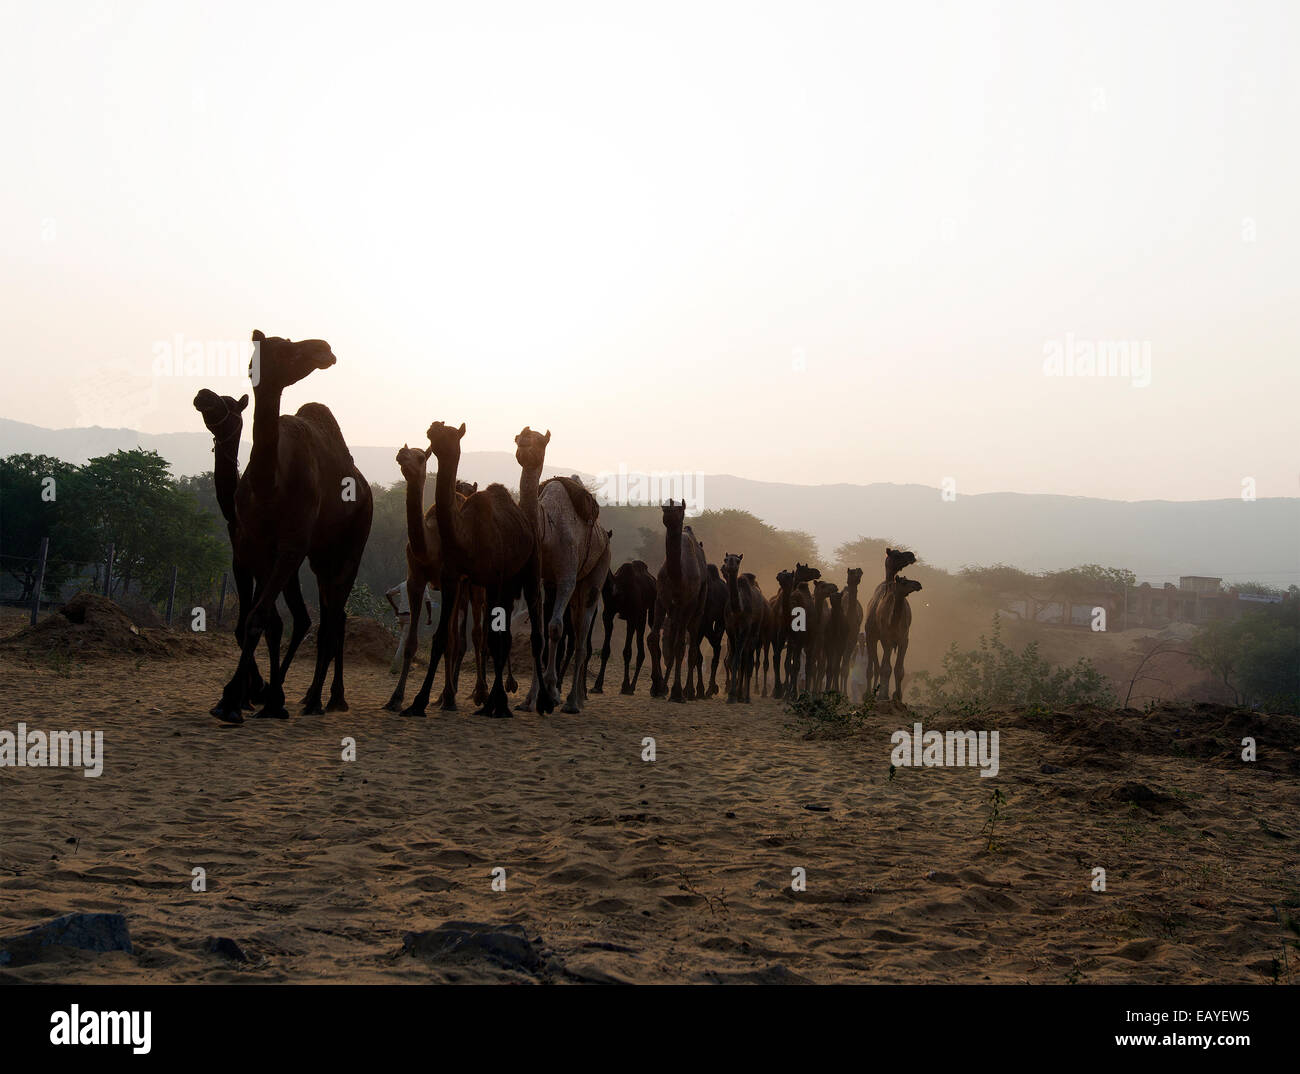 Los camellos, desiertos, animales de trabajo, camélidos, leche, Pushkar, Rajastán, India. Foto de stock